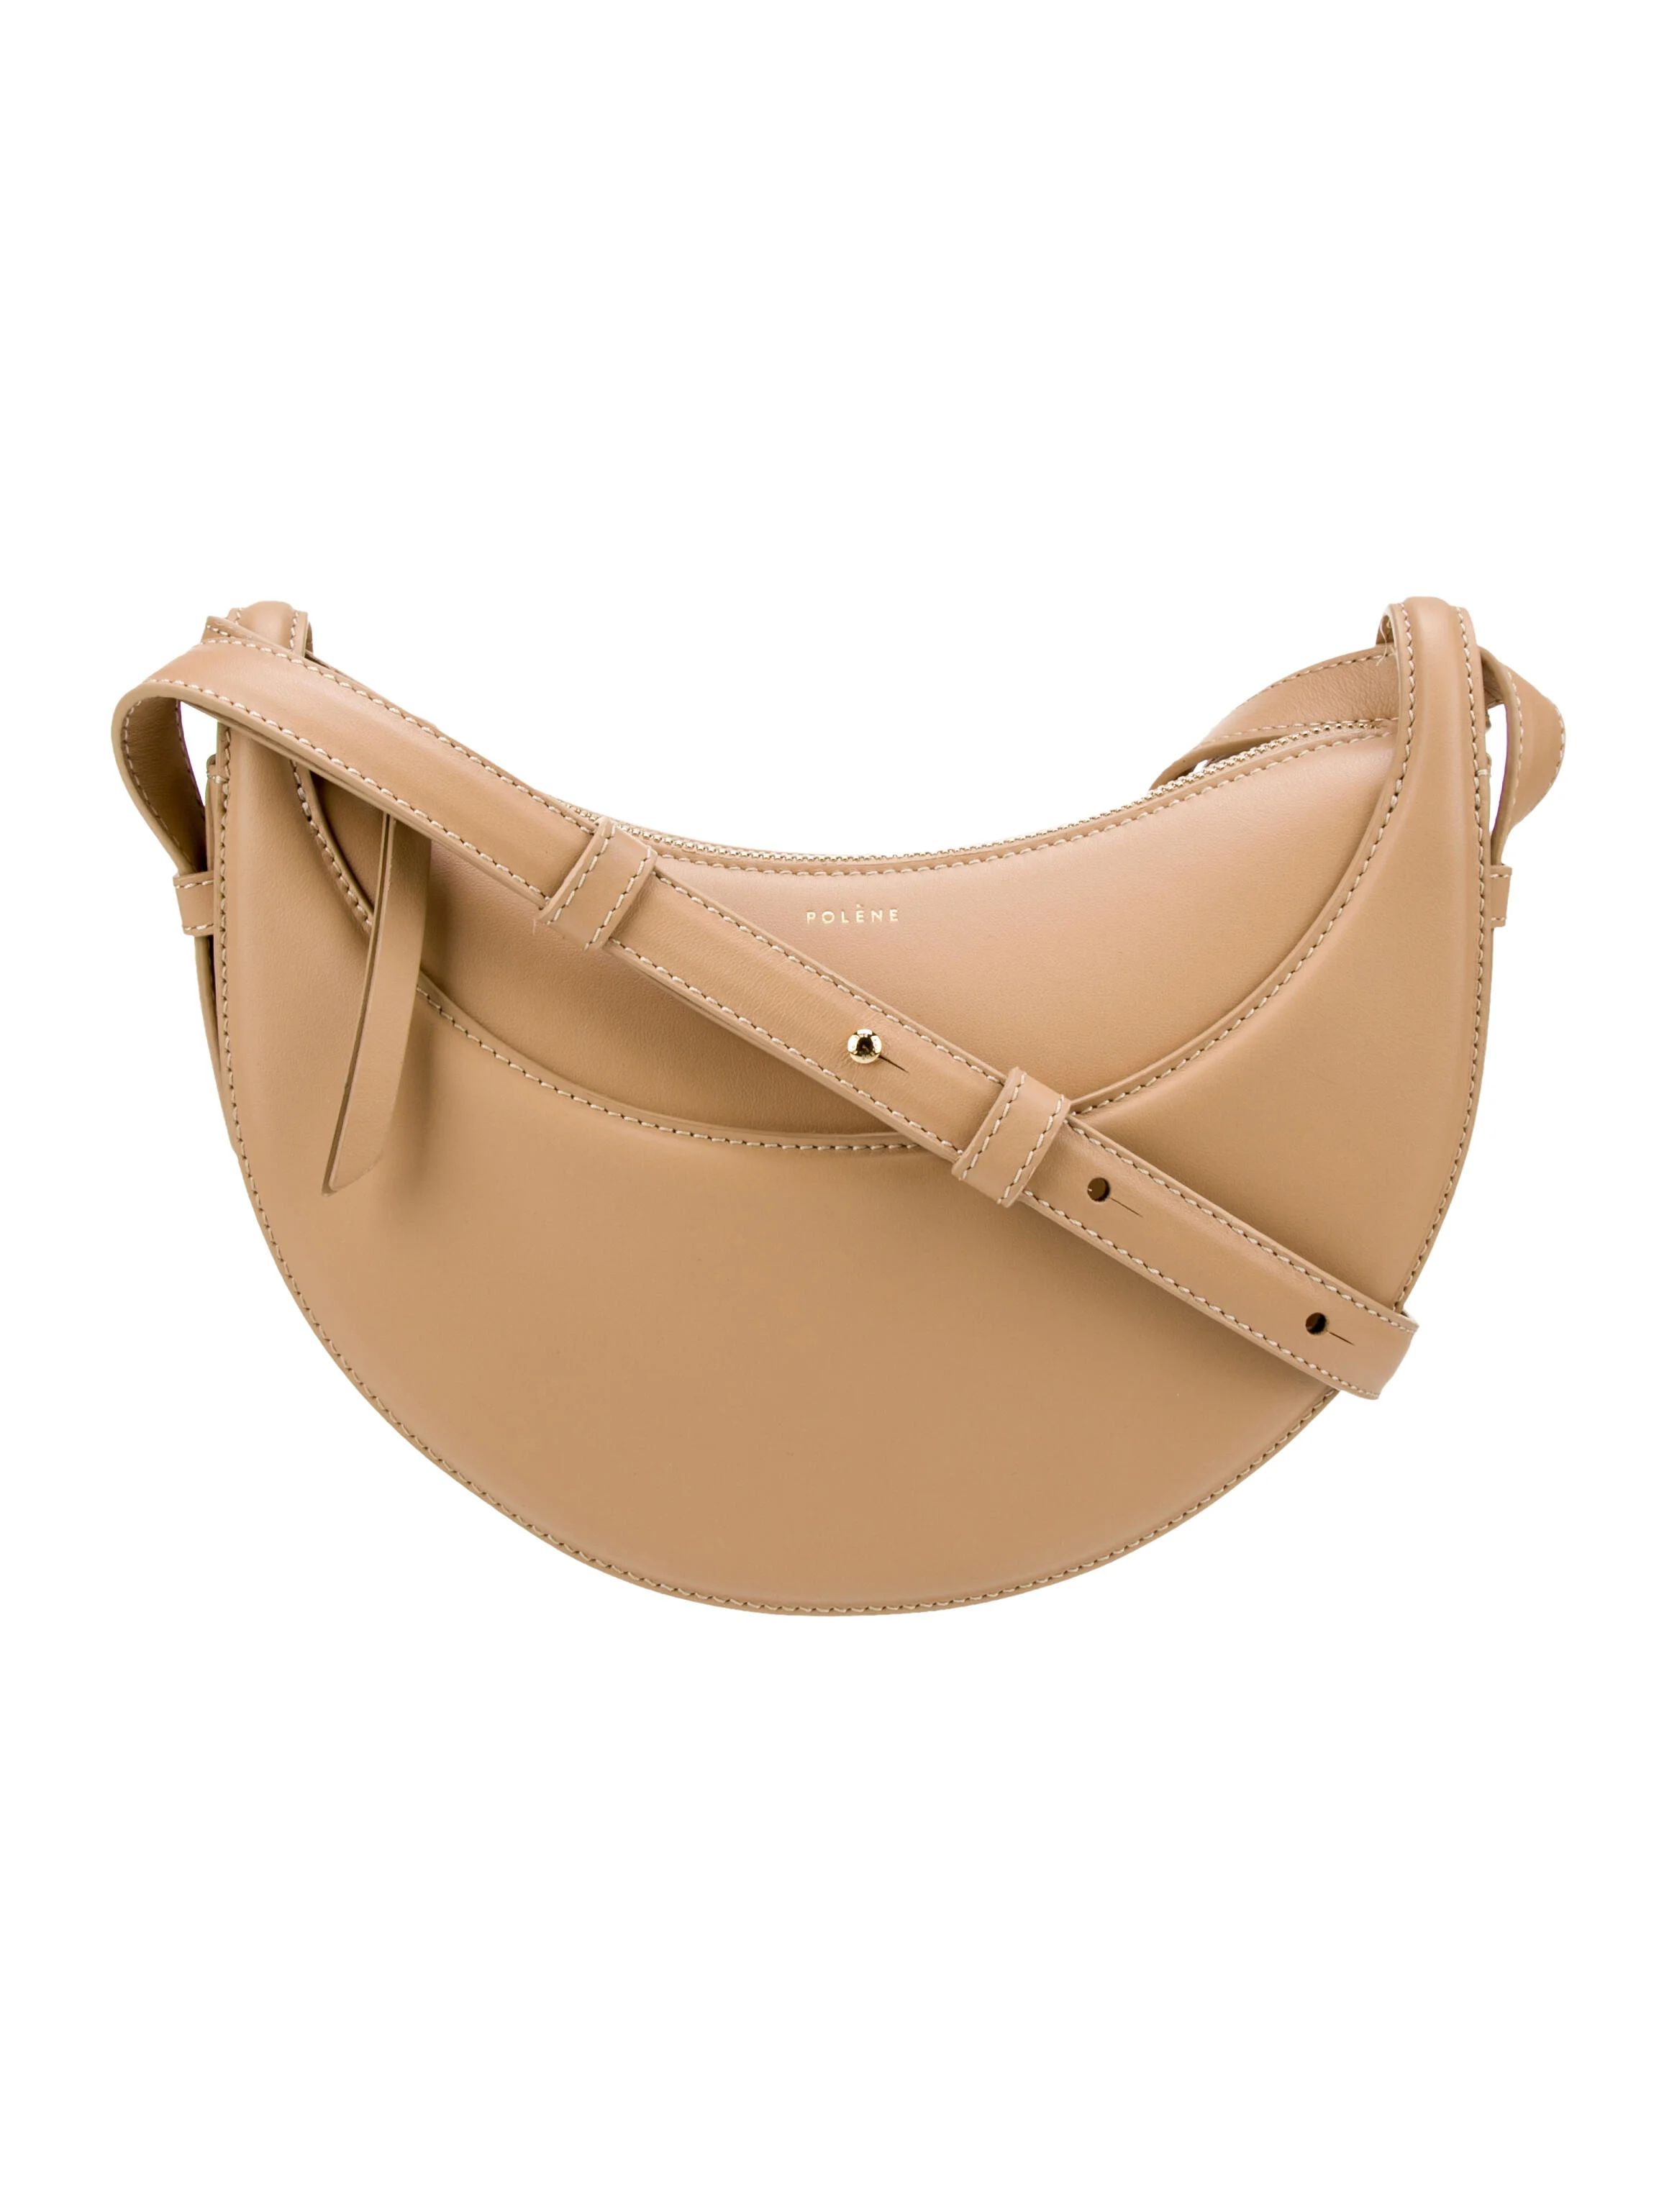 Numéro Dix Leather Shoulder Bag | The RealReal